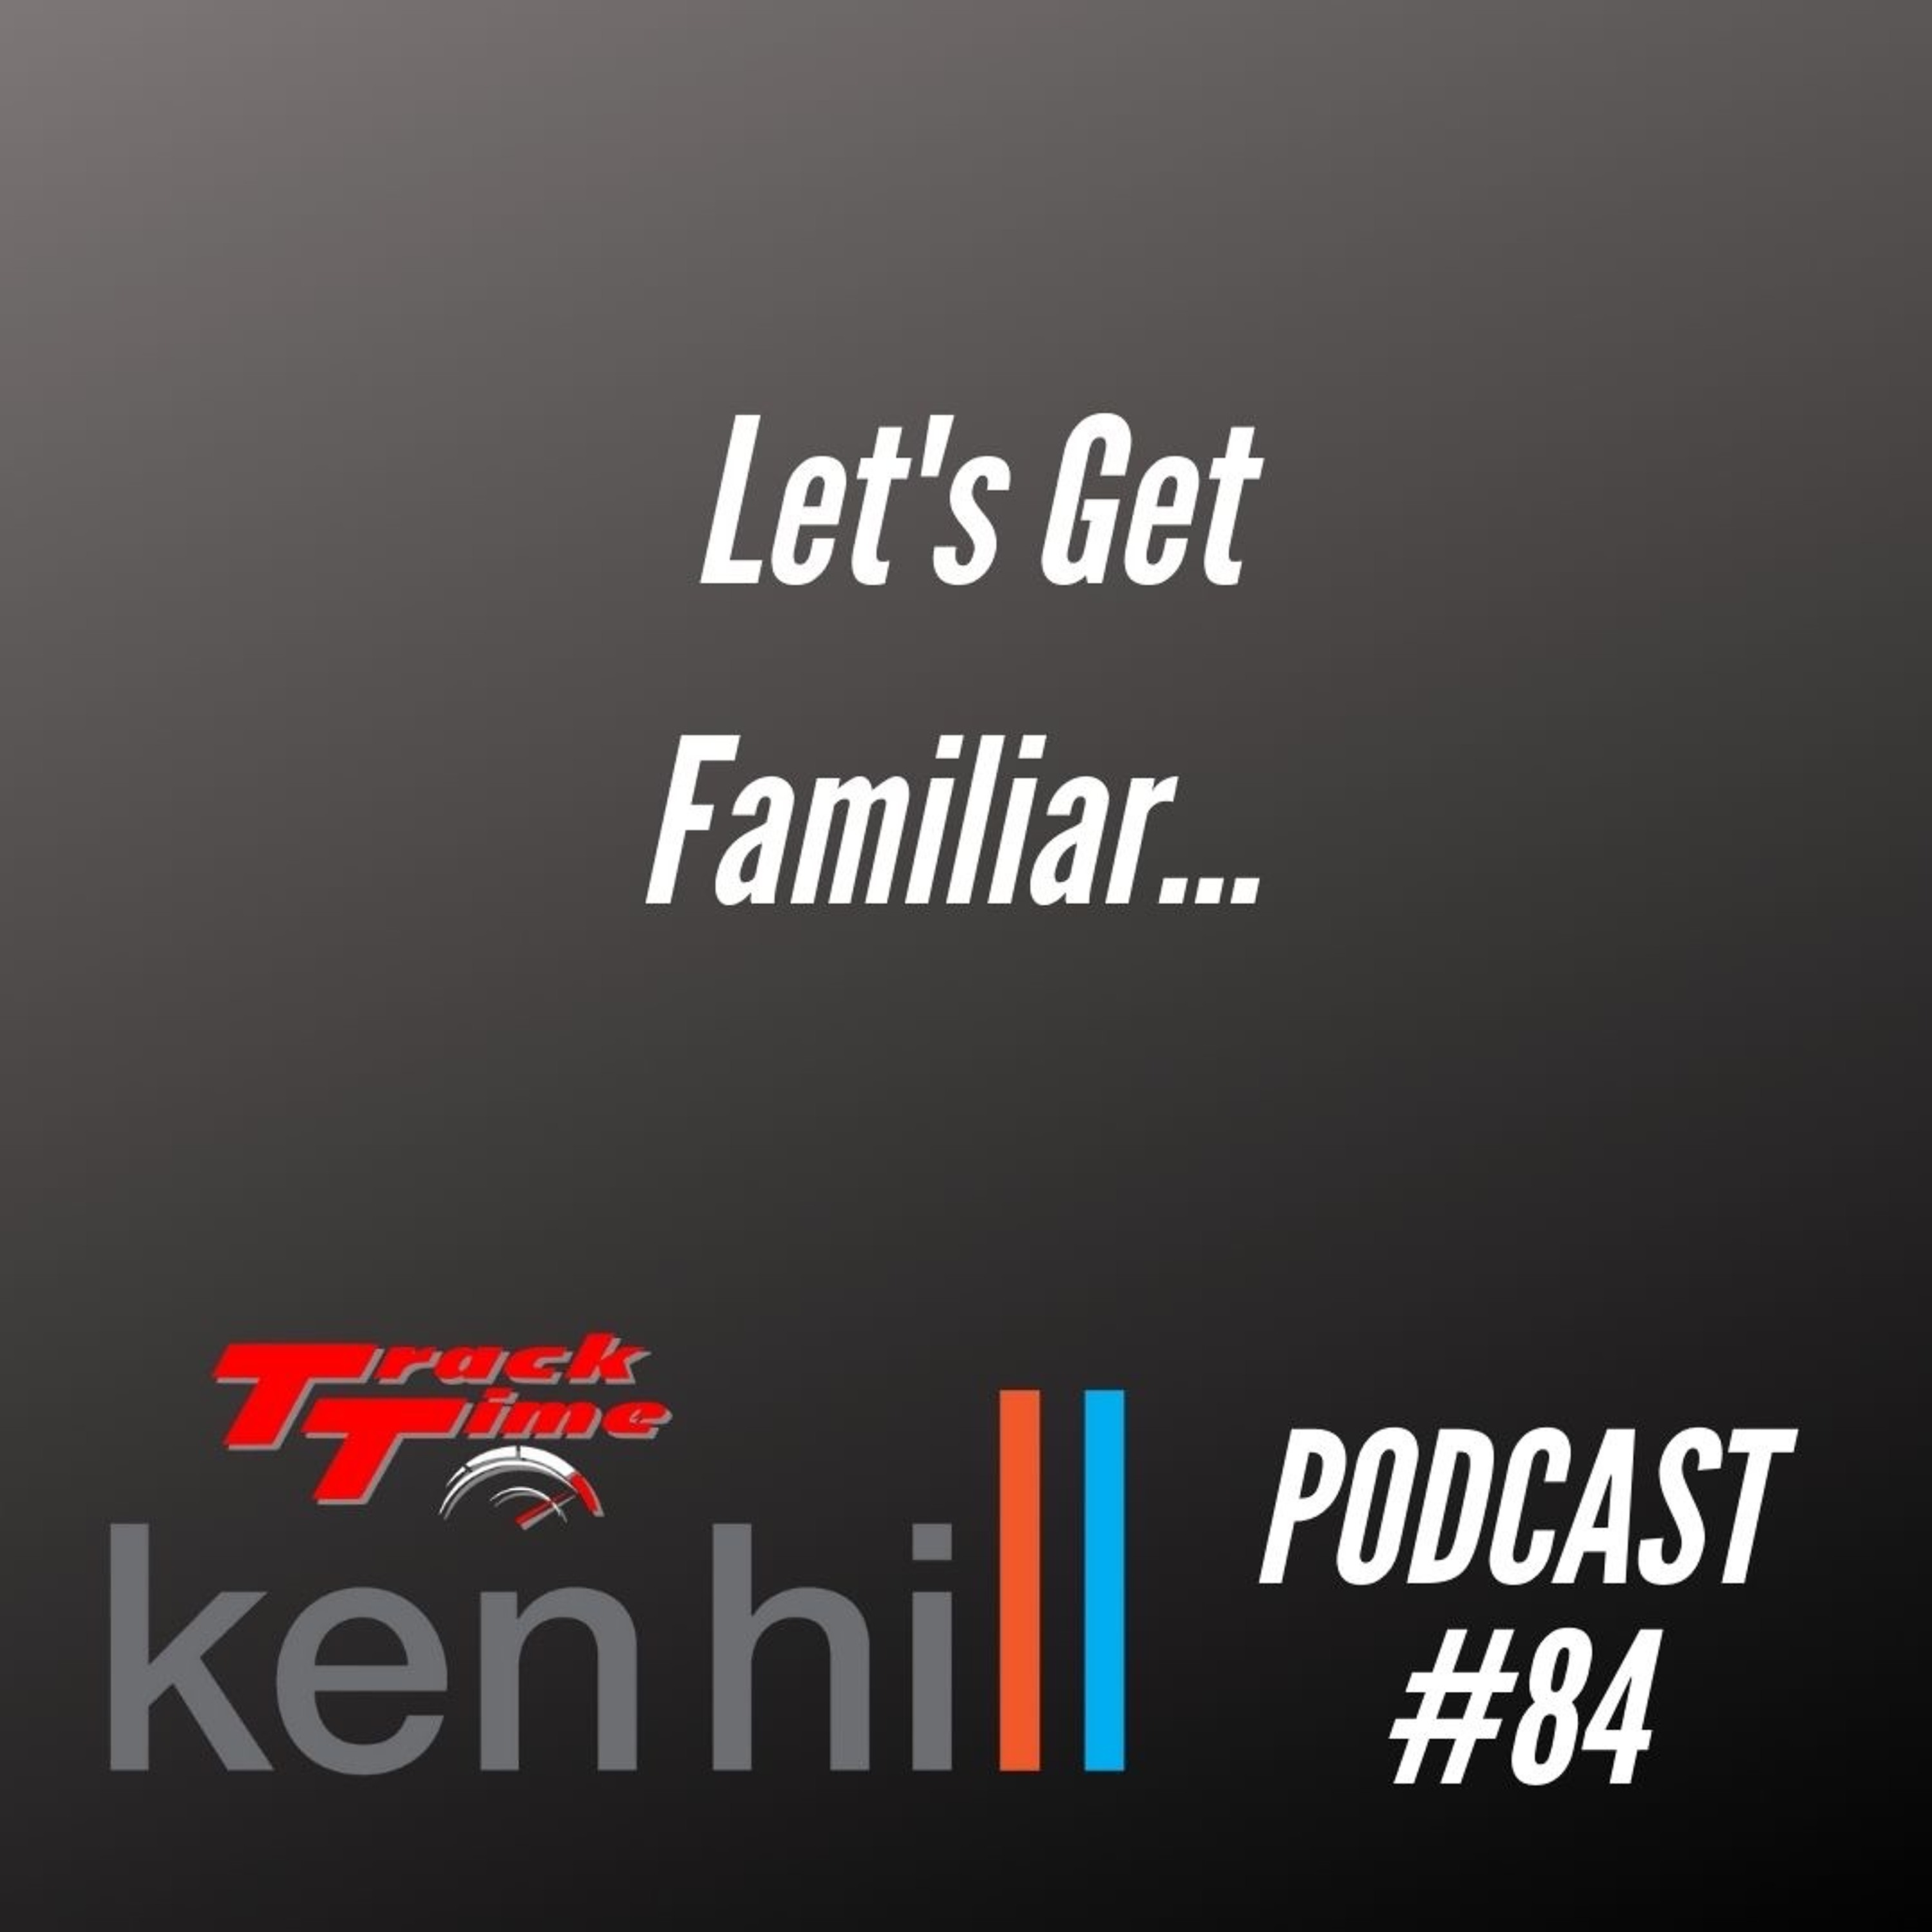 Podcast #84 - Let's get familiar........